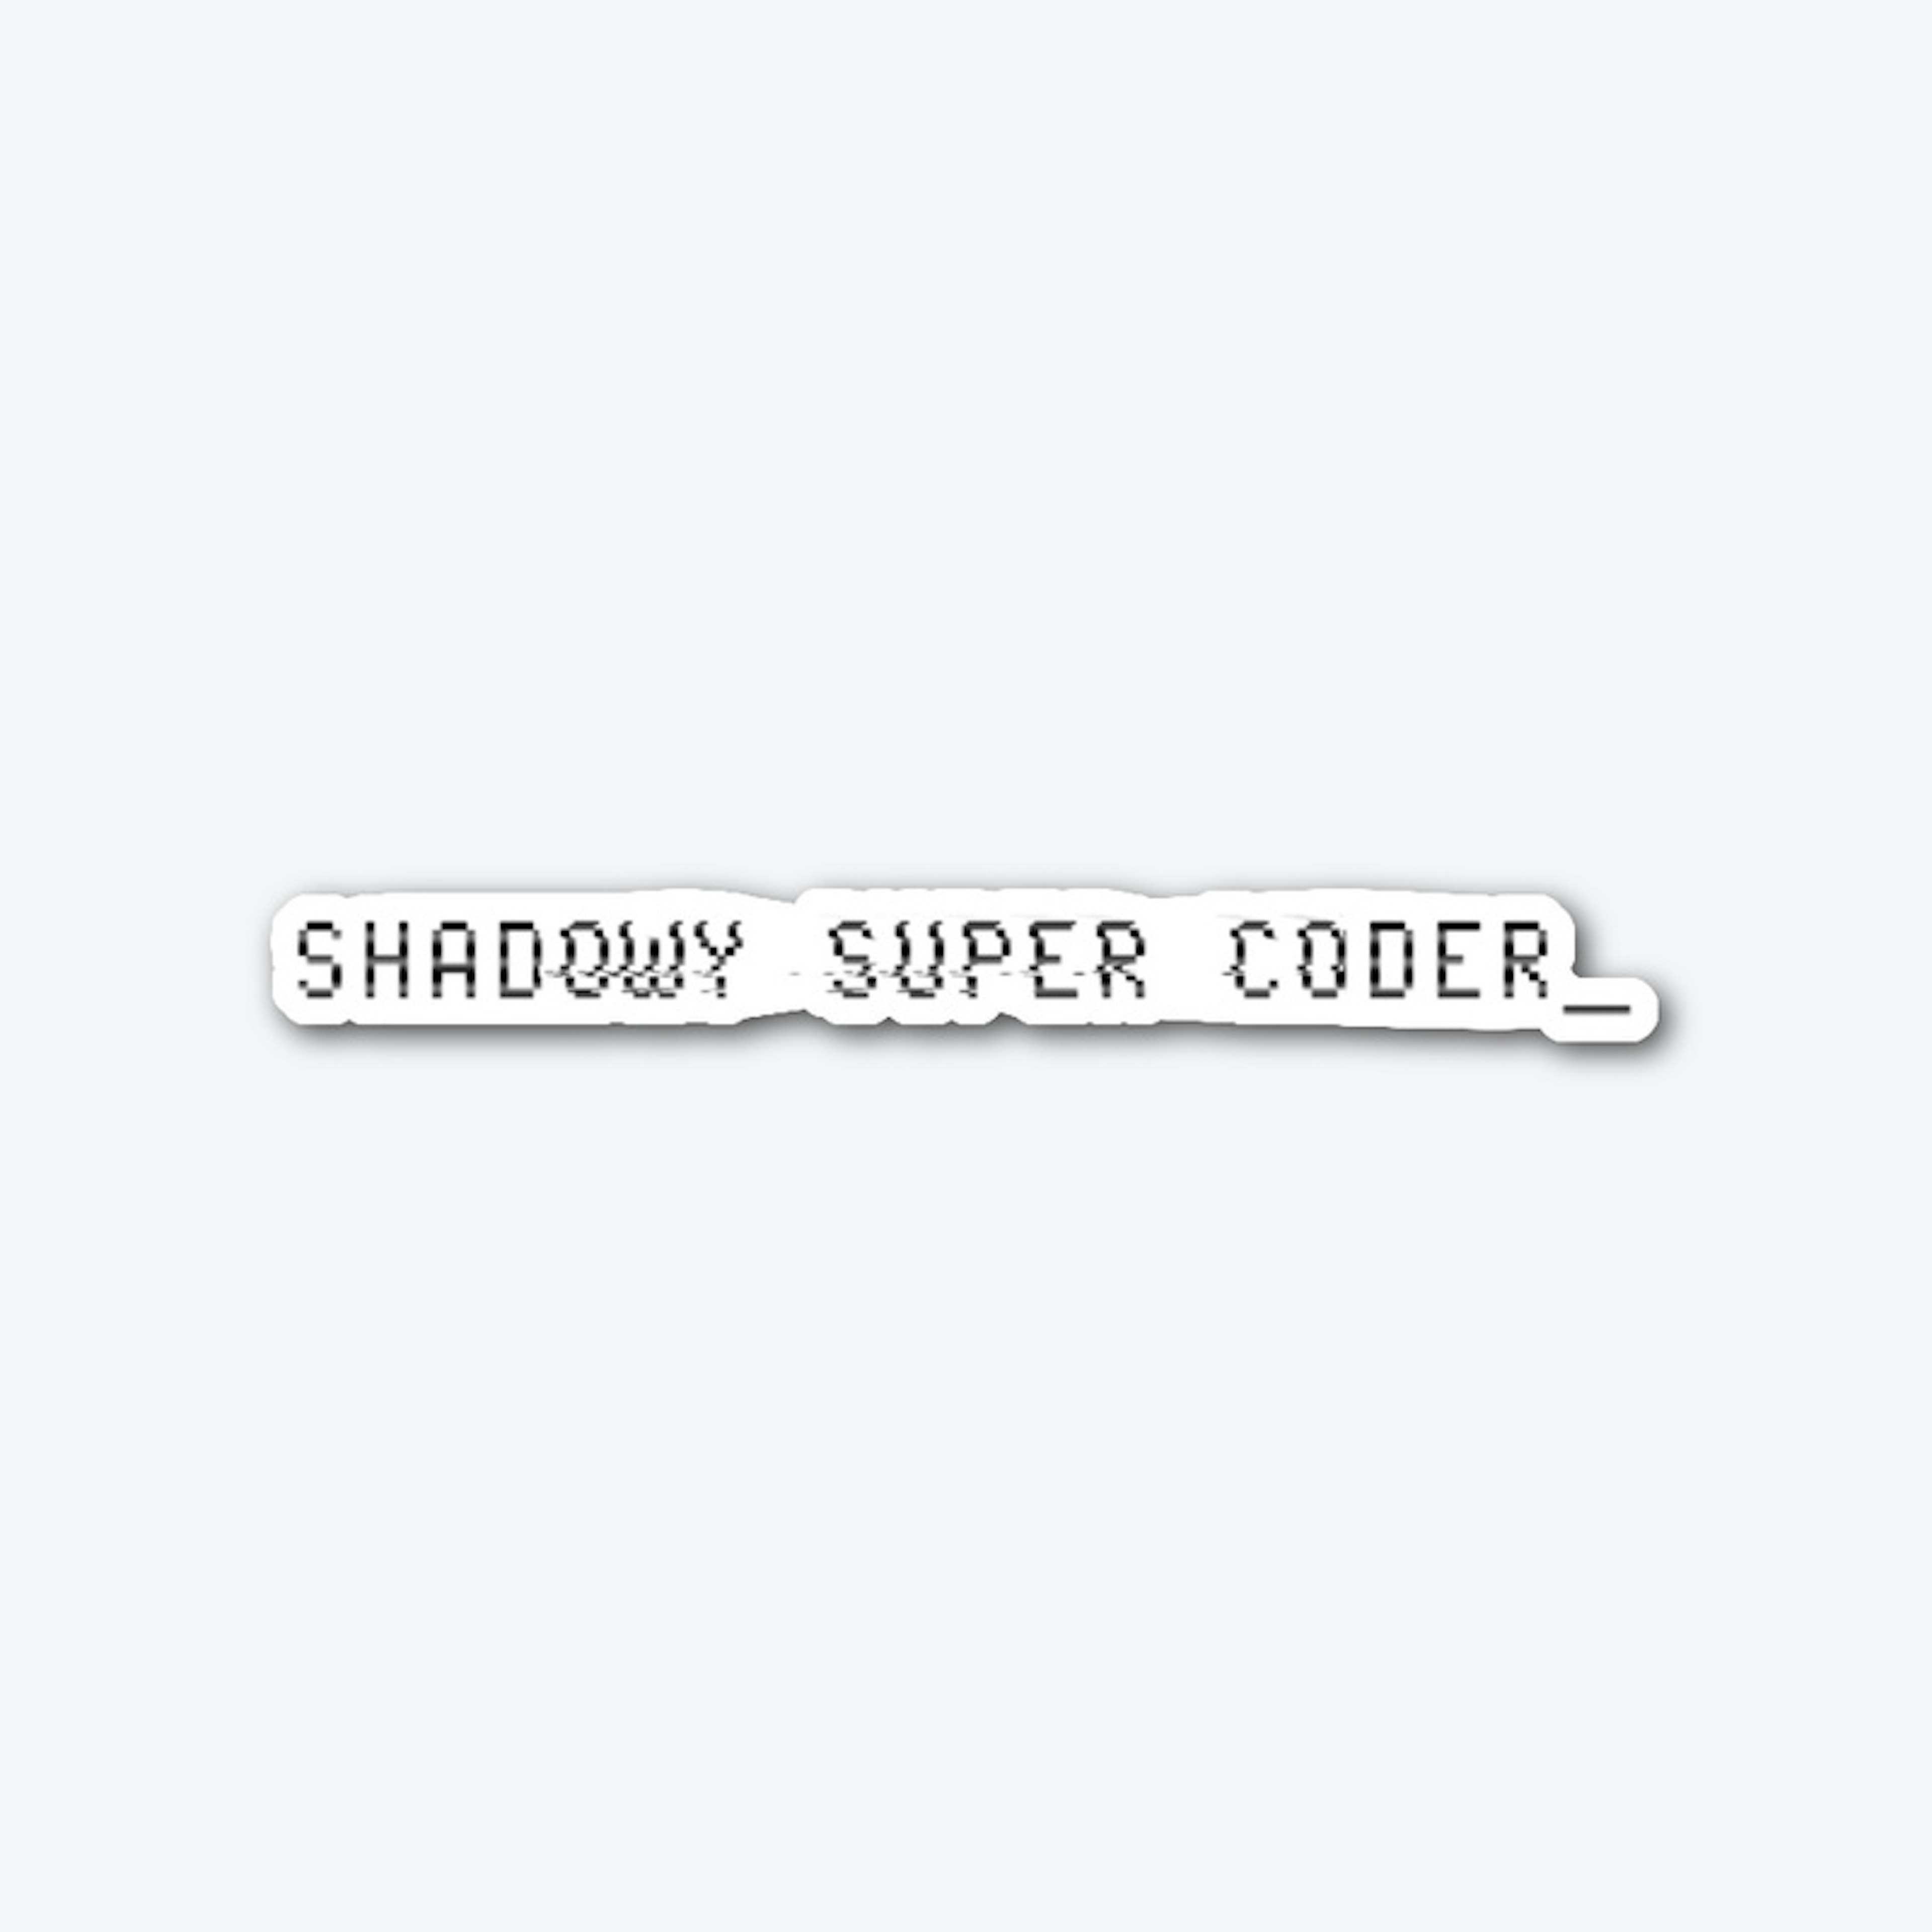 shadowy super coder sticker